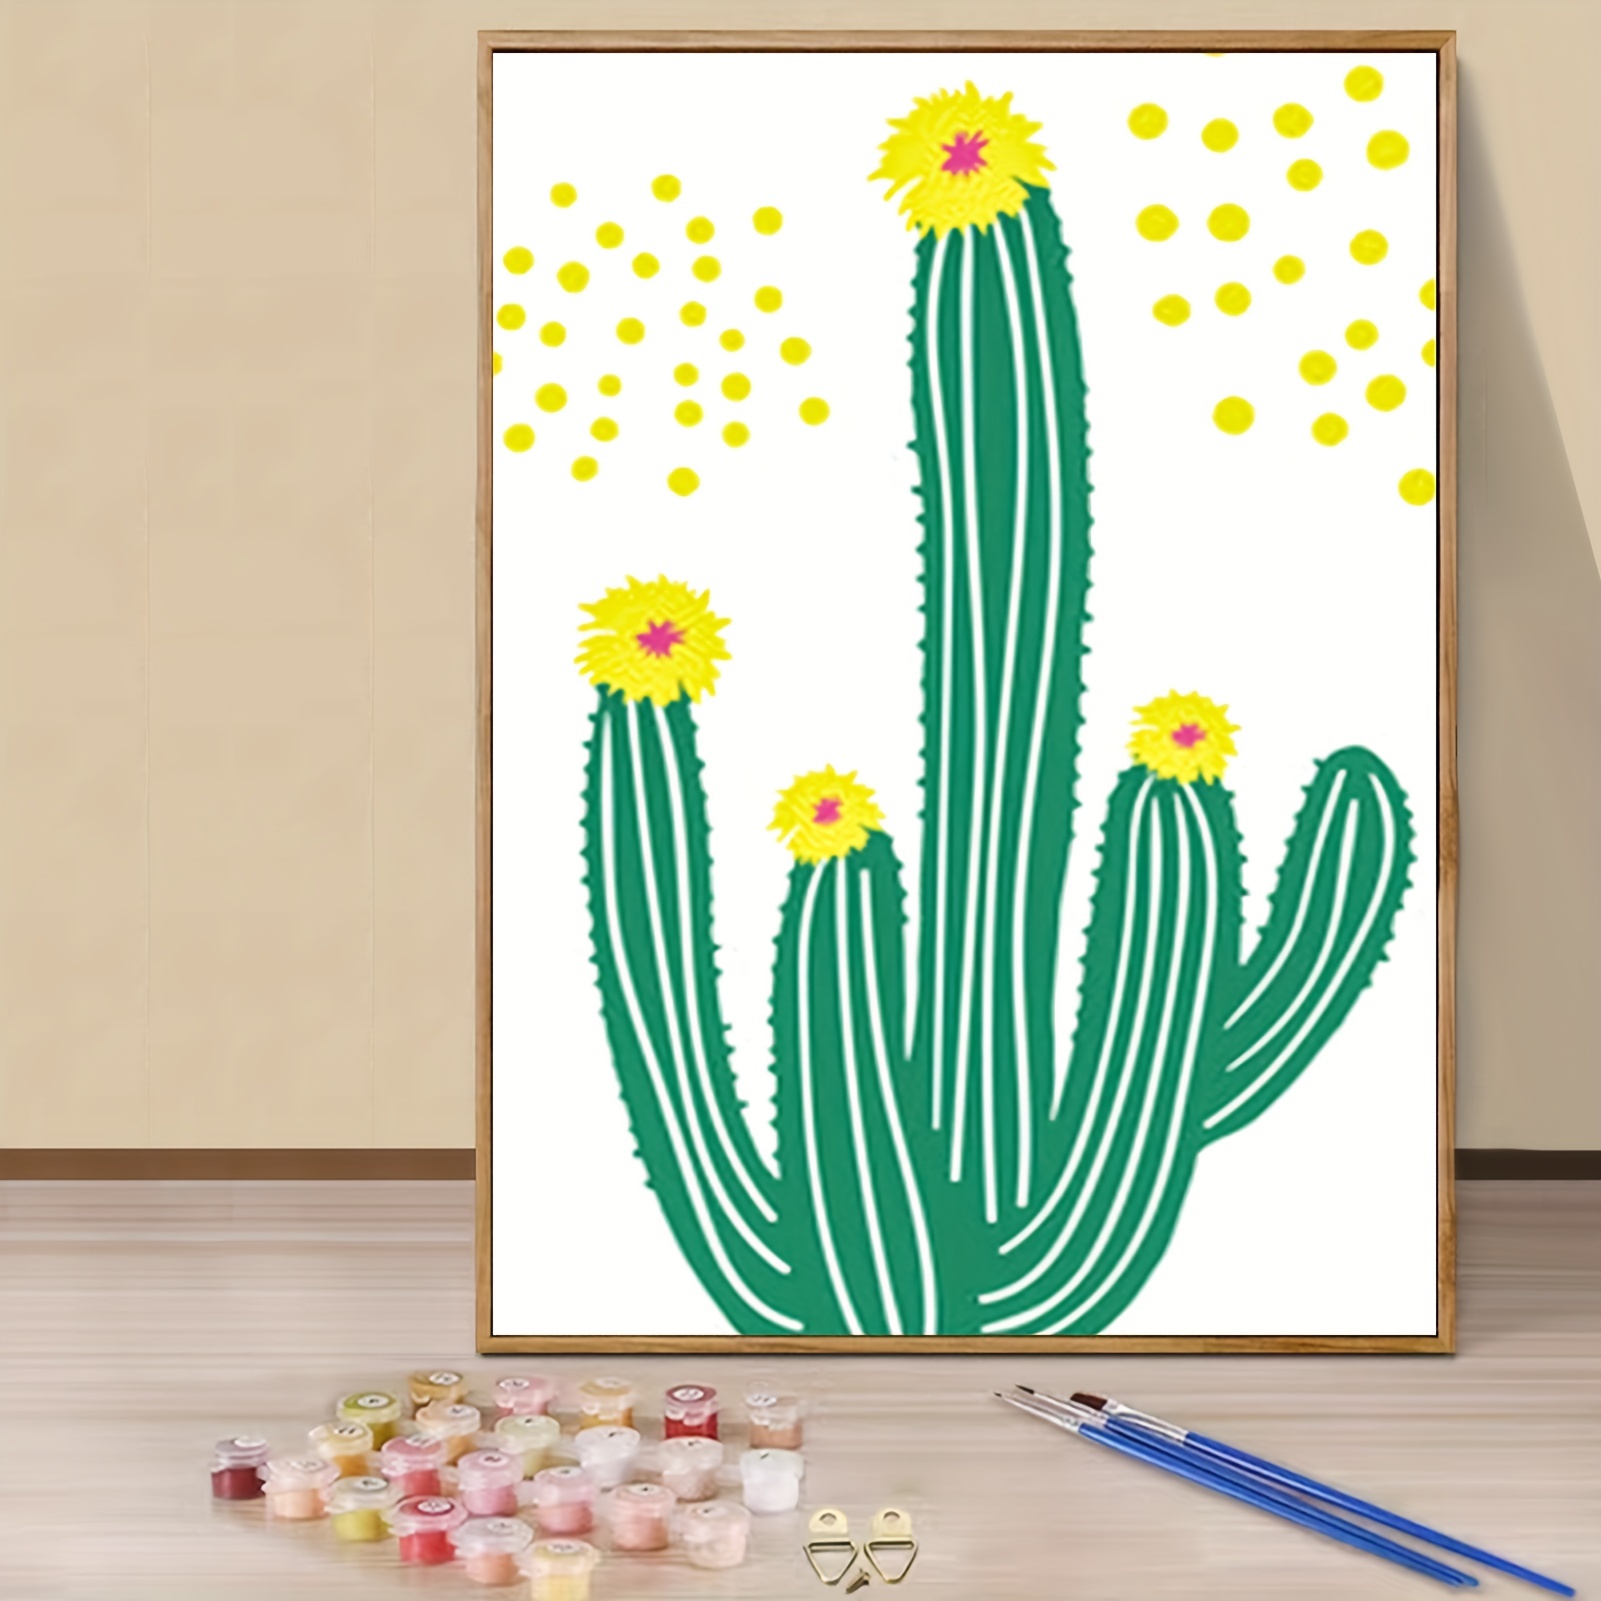  Tucocoo Saguaro - Kit de pintura por números de cactus de 16 x  20 pulgadas, lienzo de pintura al óleo para niños, estudiantes, adultos  principiantes con pinceles y pigmento acrílico, regalo